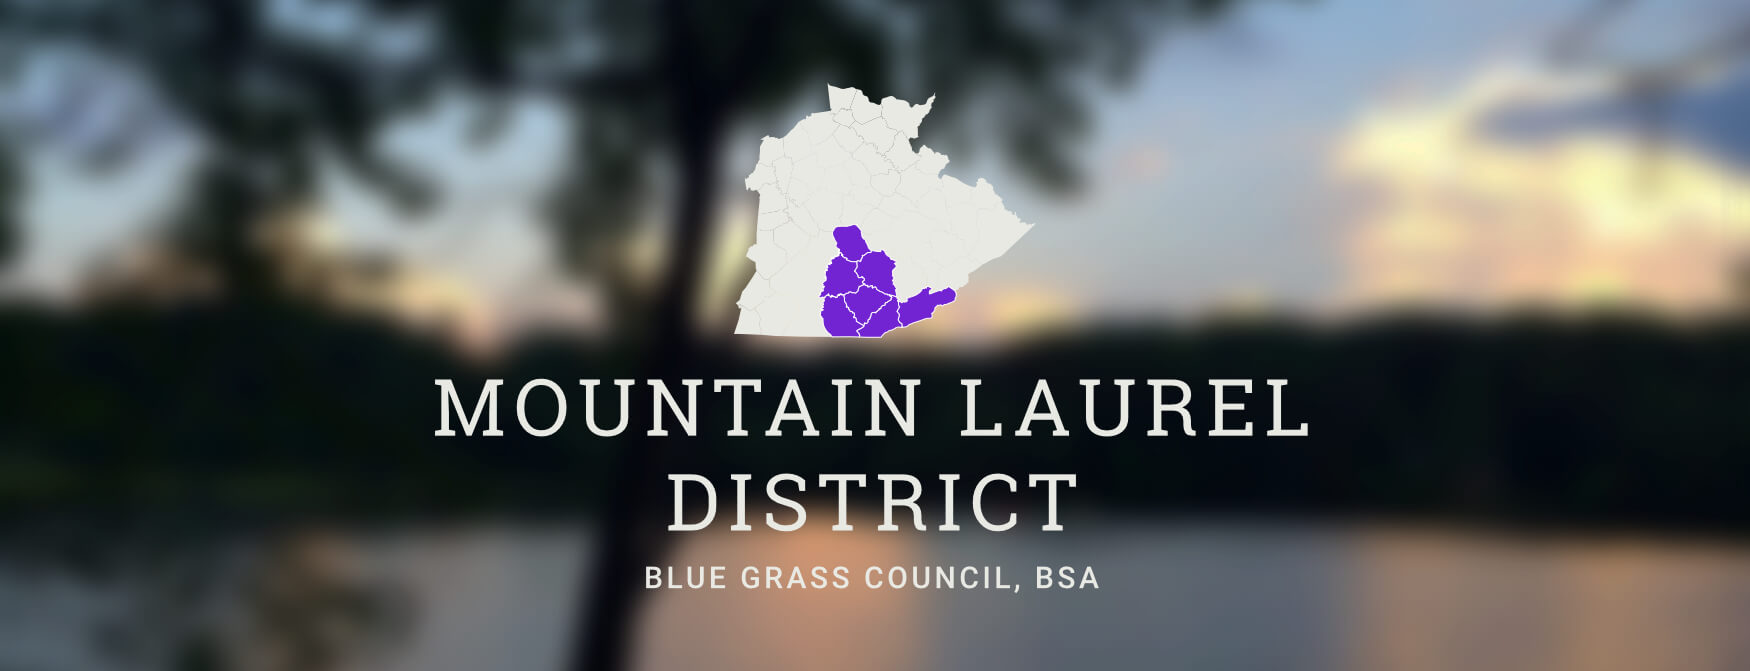 Mountain Laurel District